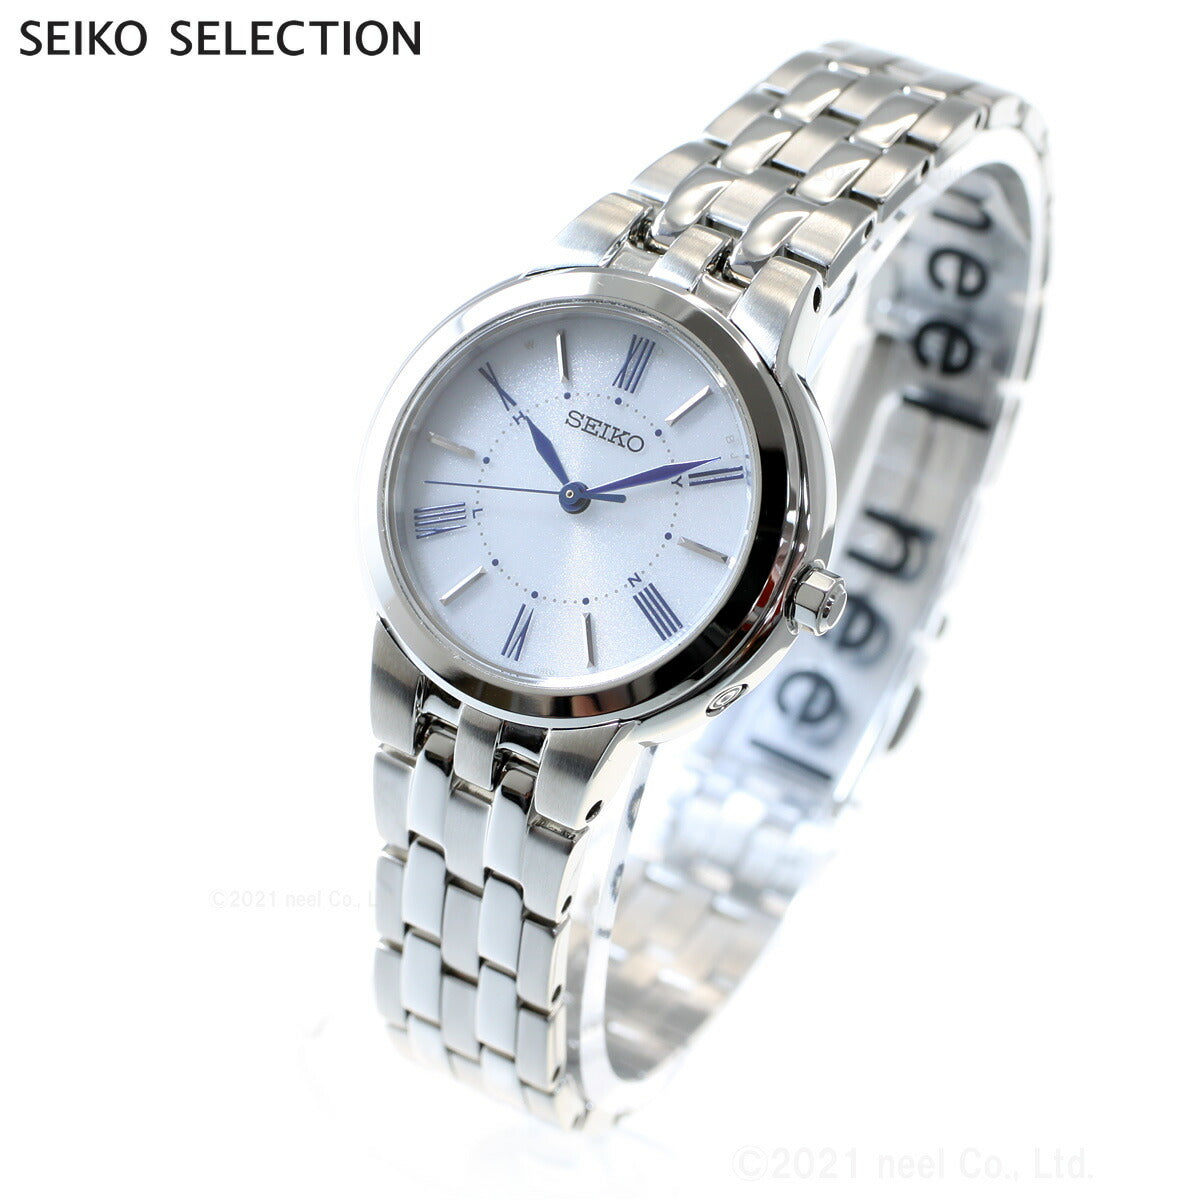 セイコー セレクション SEIKO SELECTION 電波 ソーラー 電波時計 腕時計 ペアモデル レディース SSDY031